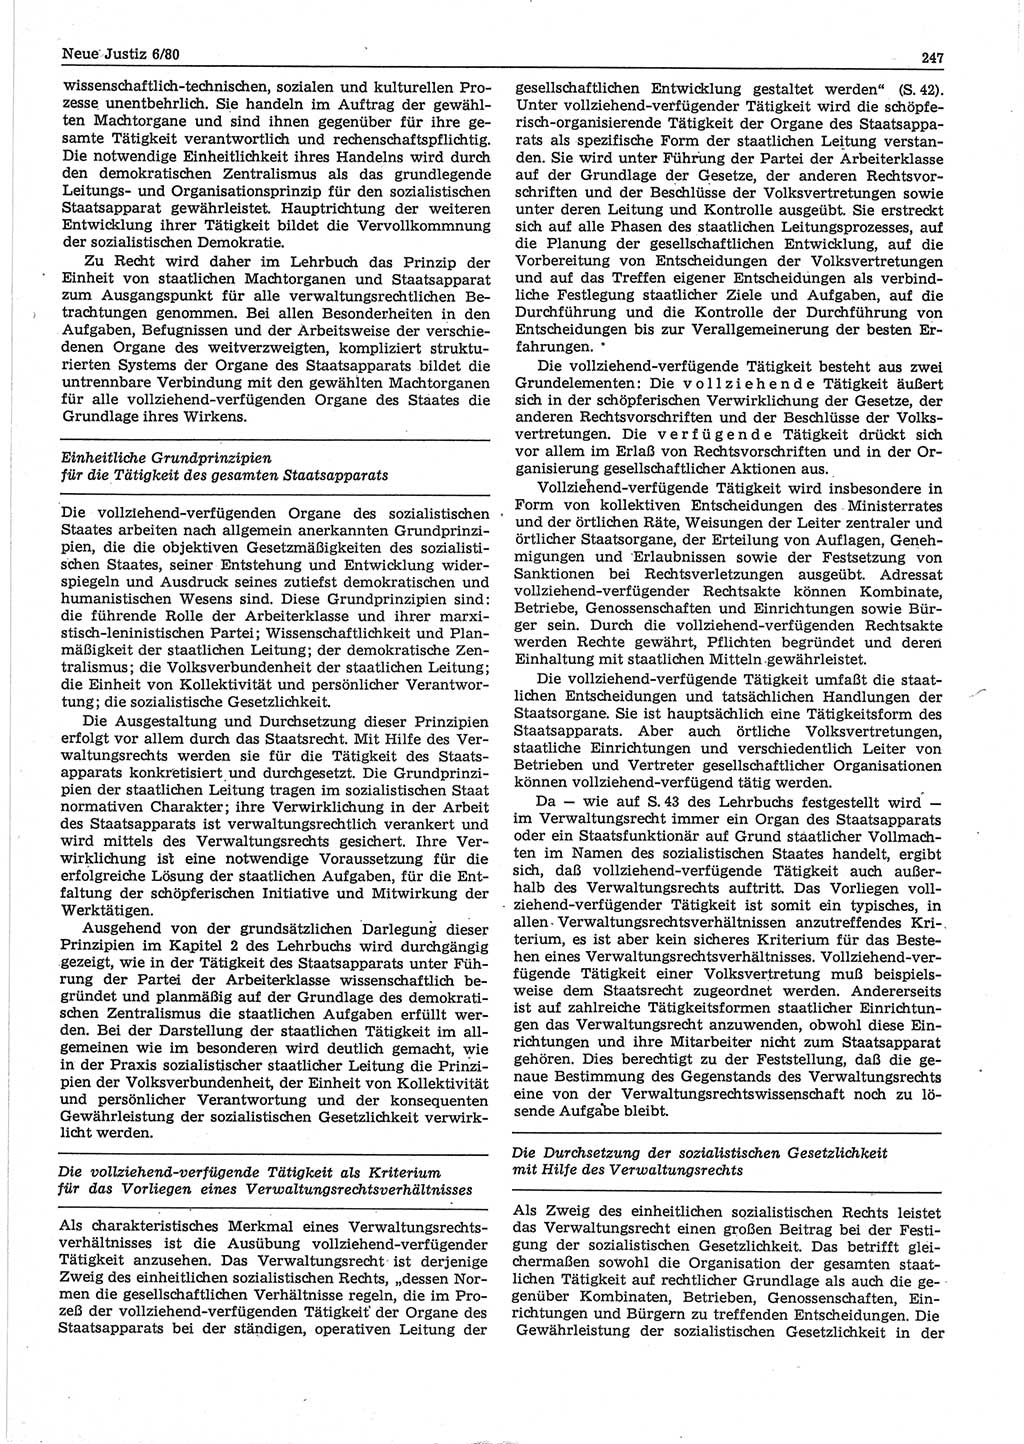 Neue Justiz (NJ), Zeitschrift für sozialistisches Recht und Gesetzlichkeit [Deutsche Demokratische Republik (DDR)], 34. Jahrgang 1980, Seite 247 (NJ DDR 1980, S. 247)